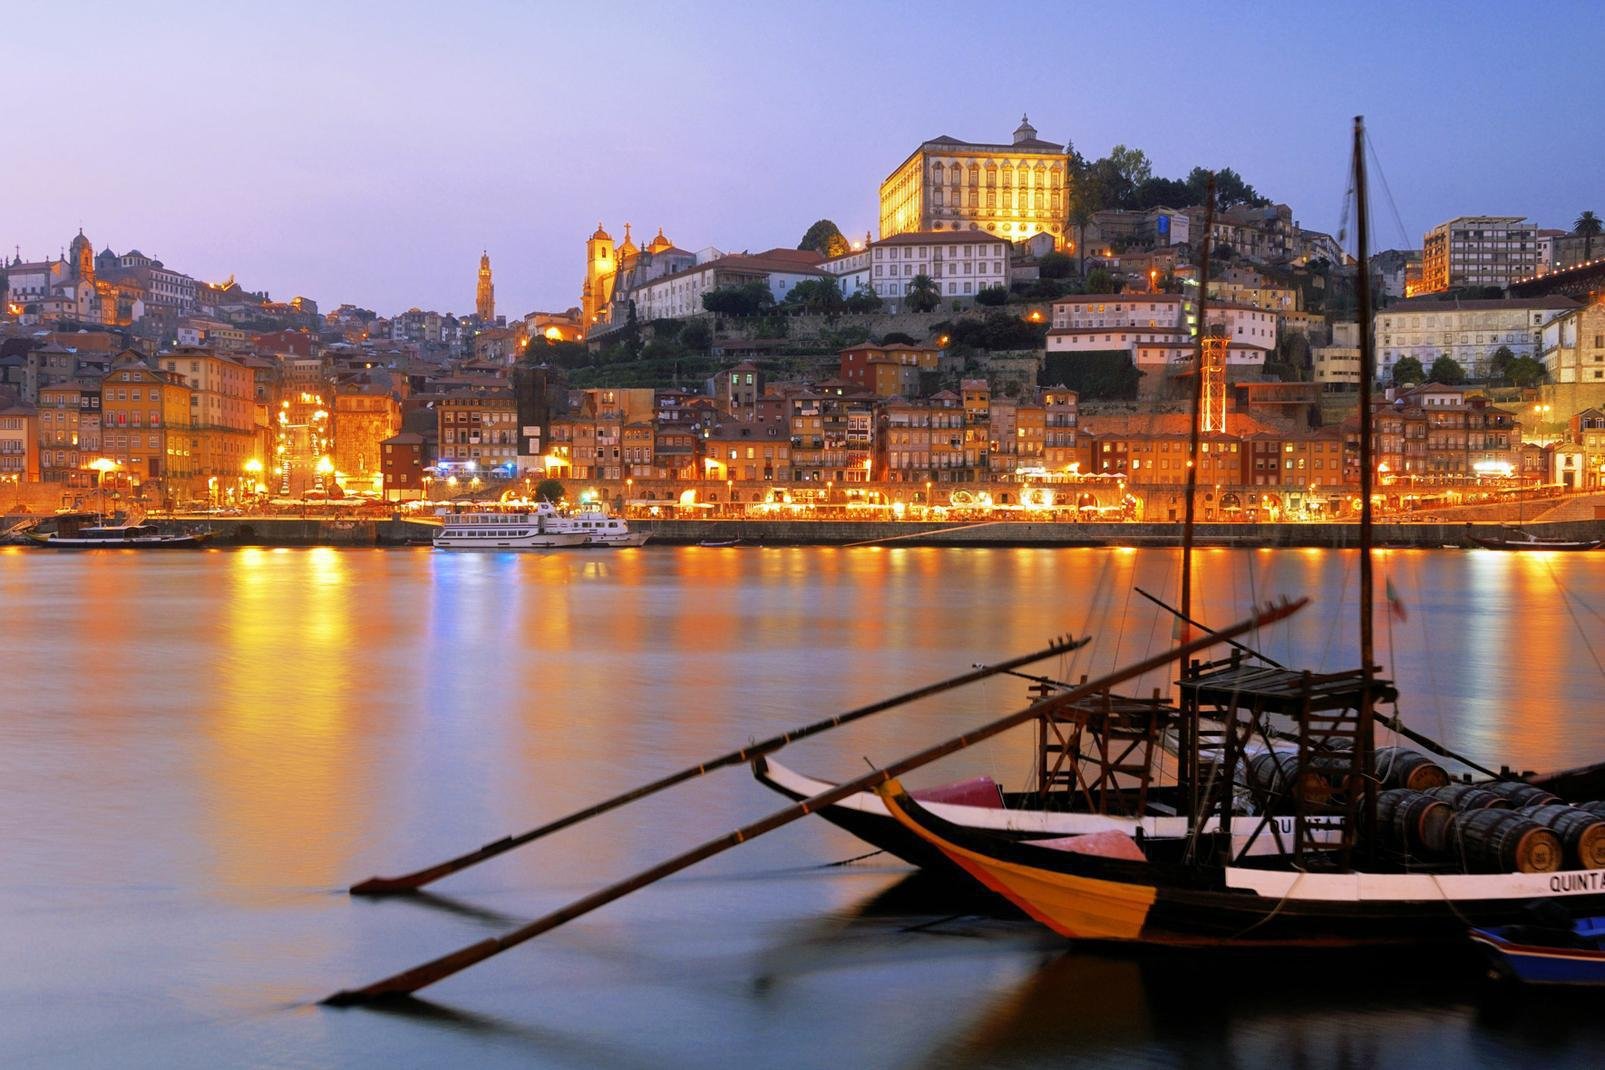 Die zweitgrößte Stadt Portugals ist weniger umworben als die Hauptstadt Lissabon. Und doch mangelt es Porto nicht an Vorzügen, die man bei Spaziergängen durch die angenehm überschaubare Altstadt entdecken kann. Man kann durch enge gepflasterte Gassen flanieren, in barocken Kirchen verweilen, durch Parks oder am Fluss entlang spazieren sowie in den äußerst angesagten Vintage-Boutiquen einkaufen. Eine ...